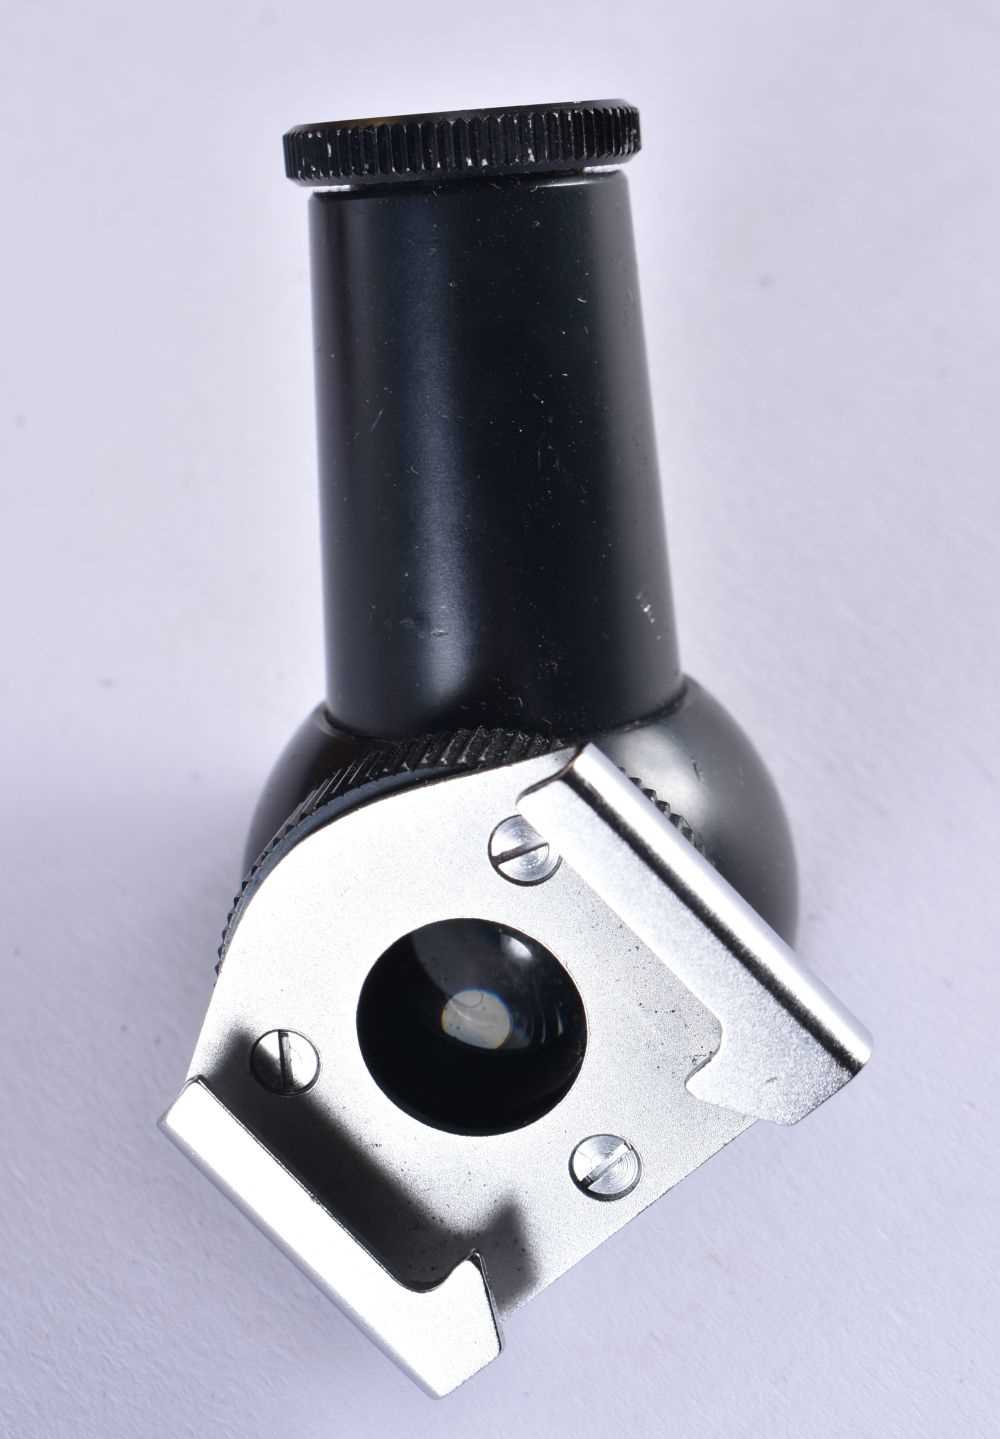 Voigtlander Bessamatic VINTAGE CAMERA w/ Color-Skopar X F/2.8 50mm Lens. 24 cm x 18 cm. - Image 5 of 6